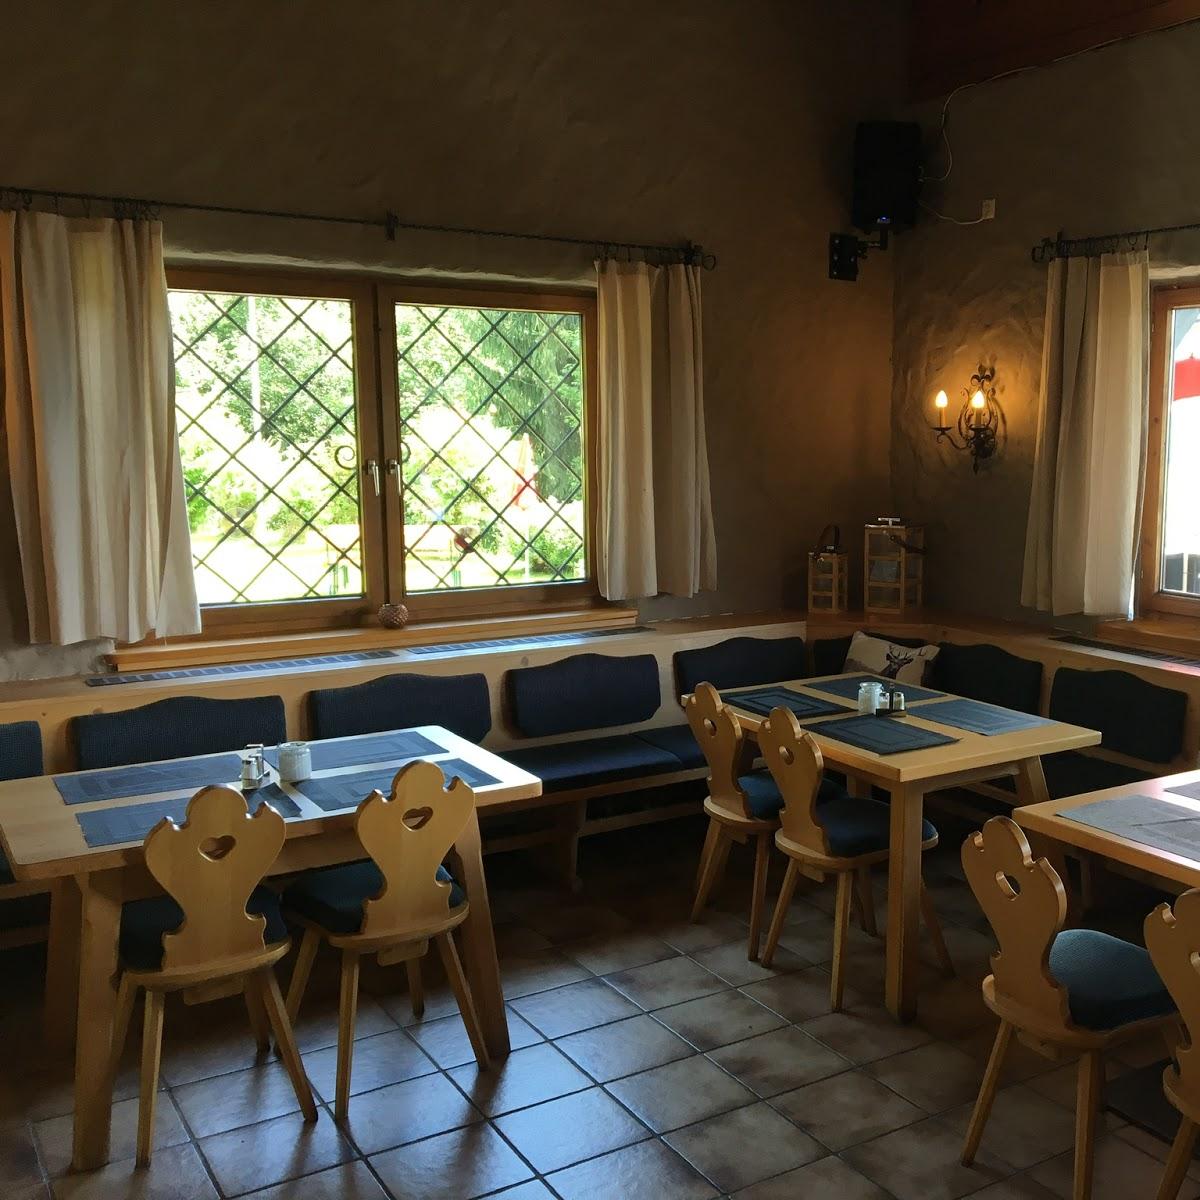 Restaurant "Berggasthaus Leitenhof" in Brixen im Thale